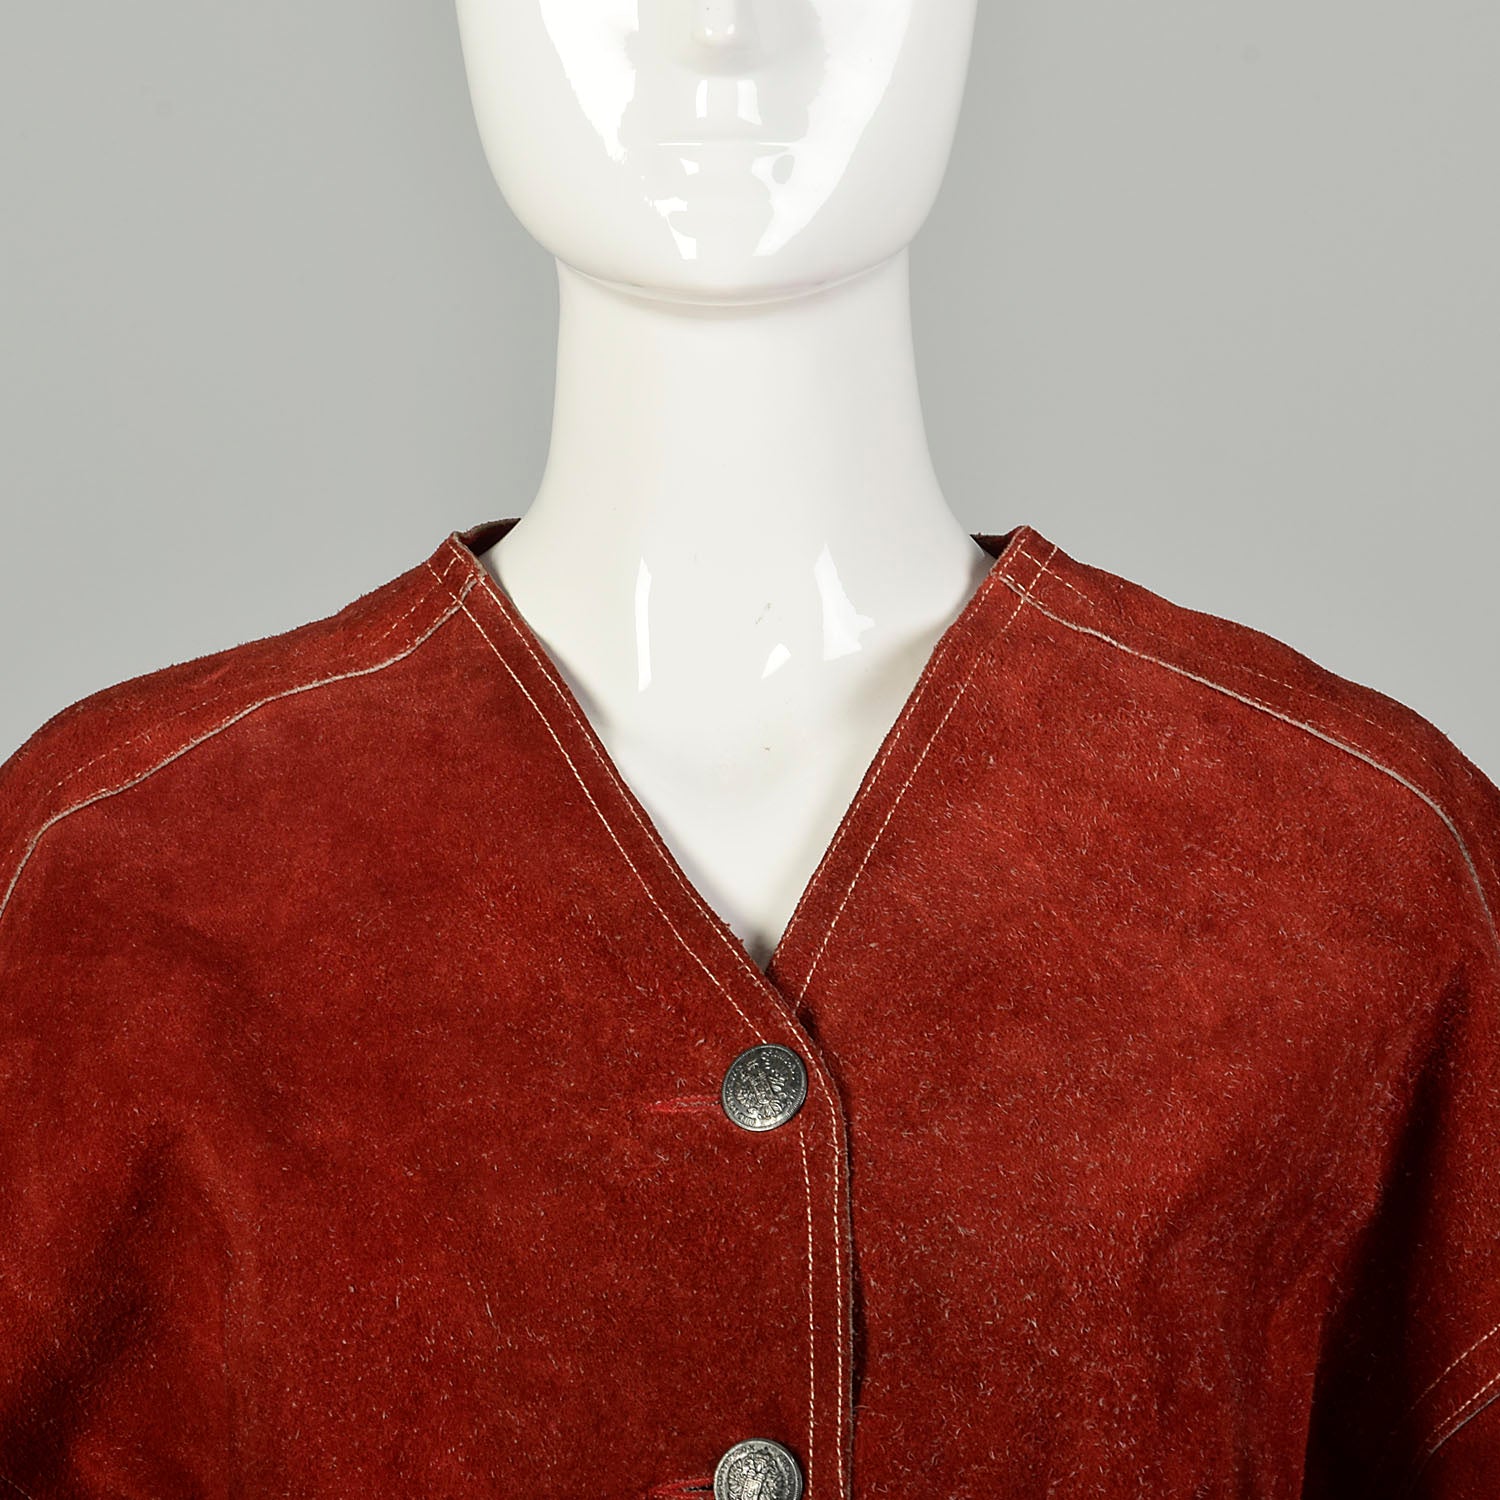 Small 1960s Bohemian Suede Leather Jacket Split Hide Hippie Shirt Boho Festival Renaissance Ware